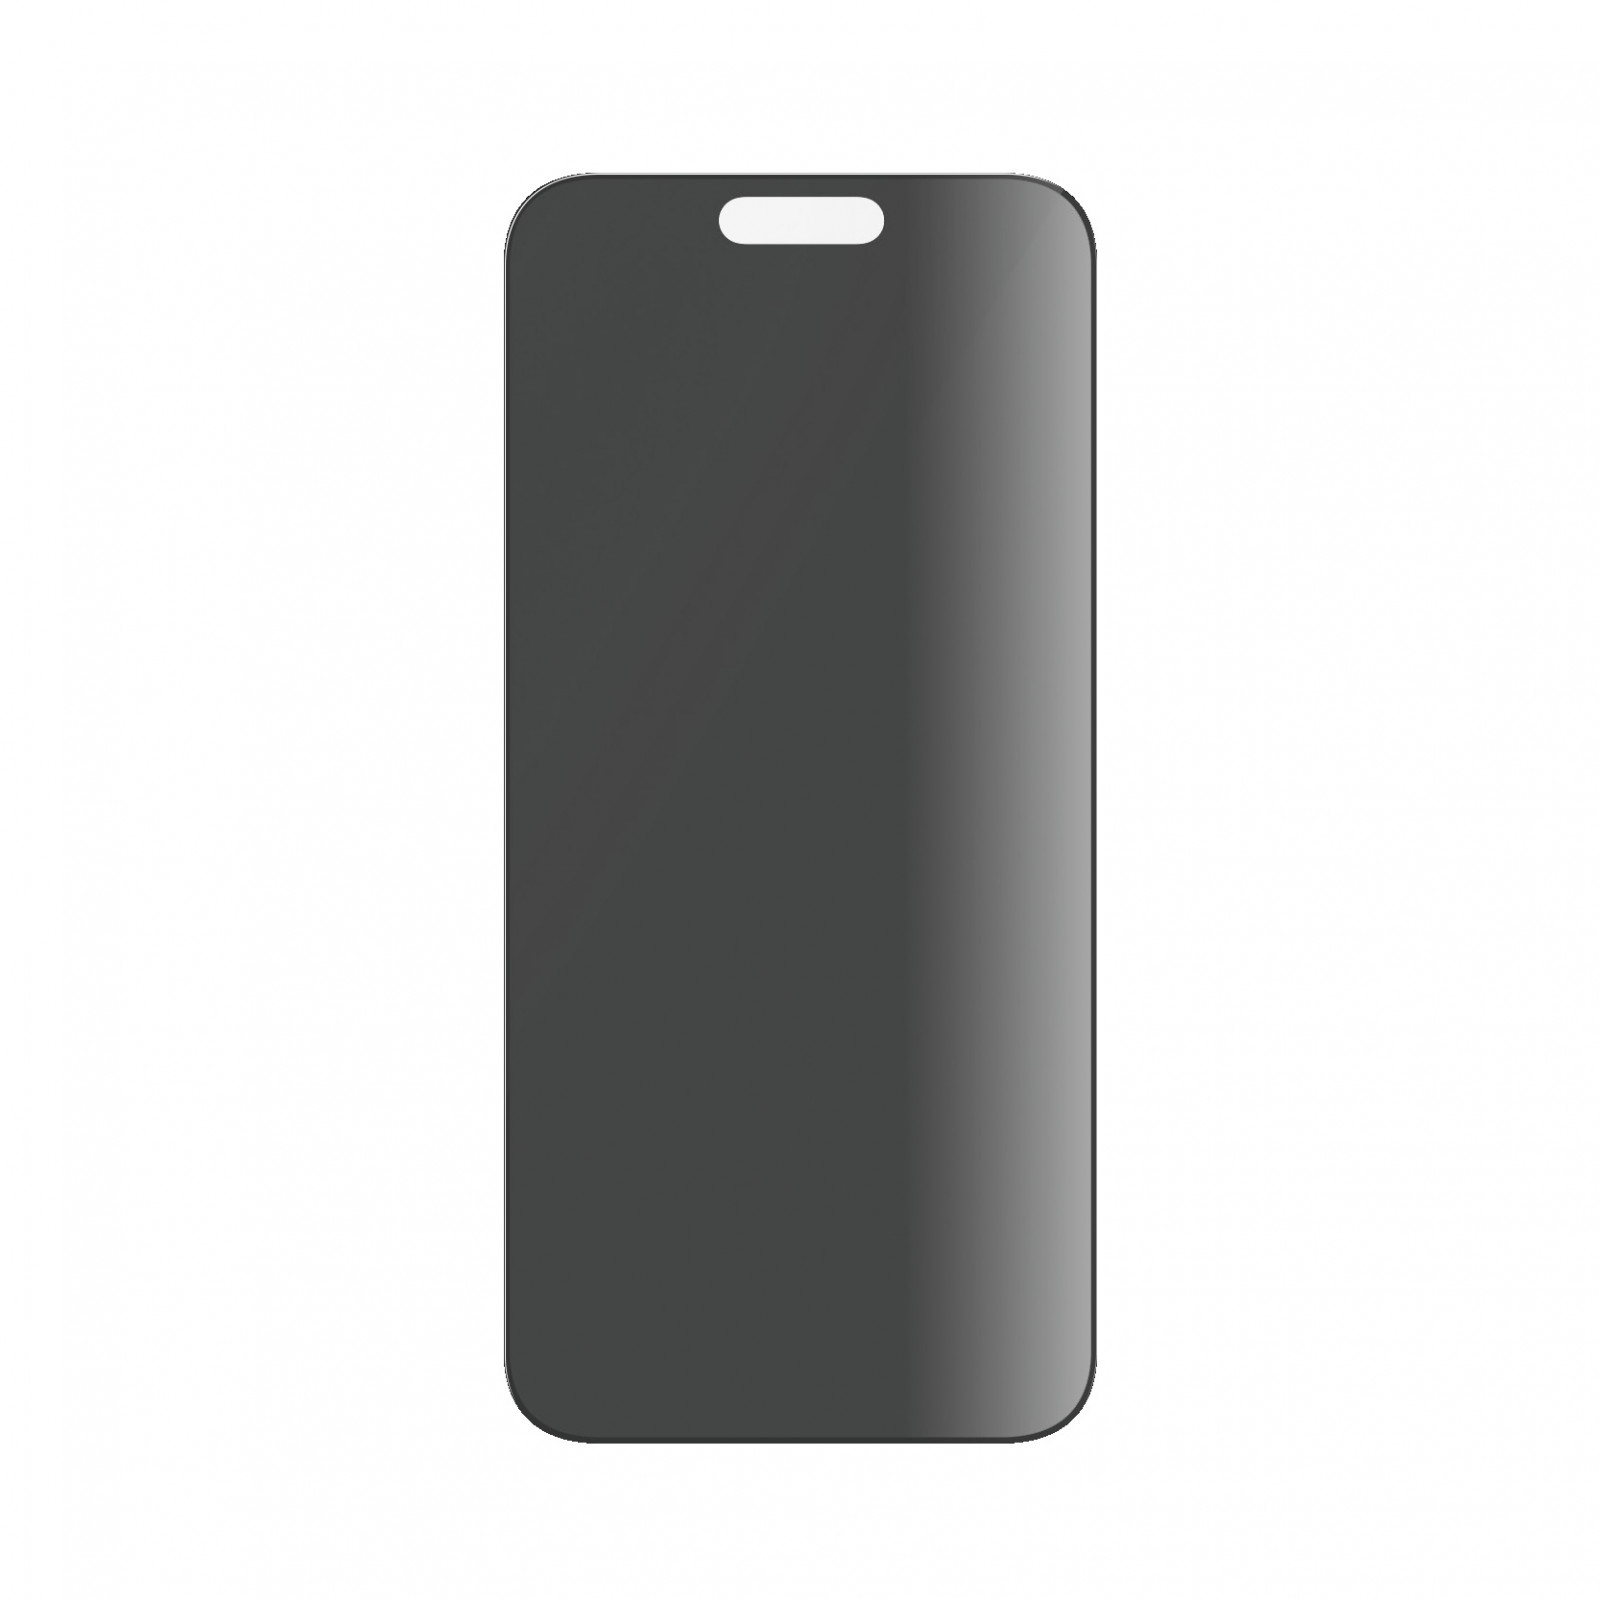 Стъклен протектор PanzerGlass за Apple iPhone 15 Pro Max, UWF с рамка за инсталация, Privacy, Черен